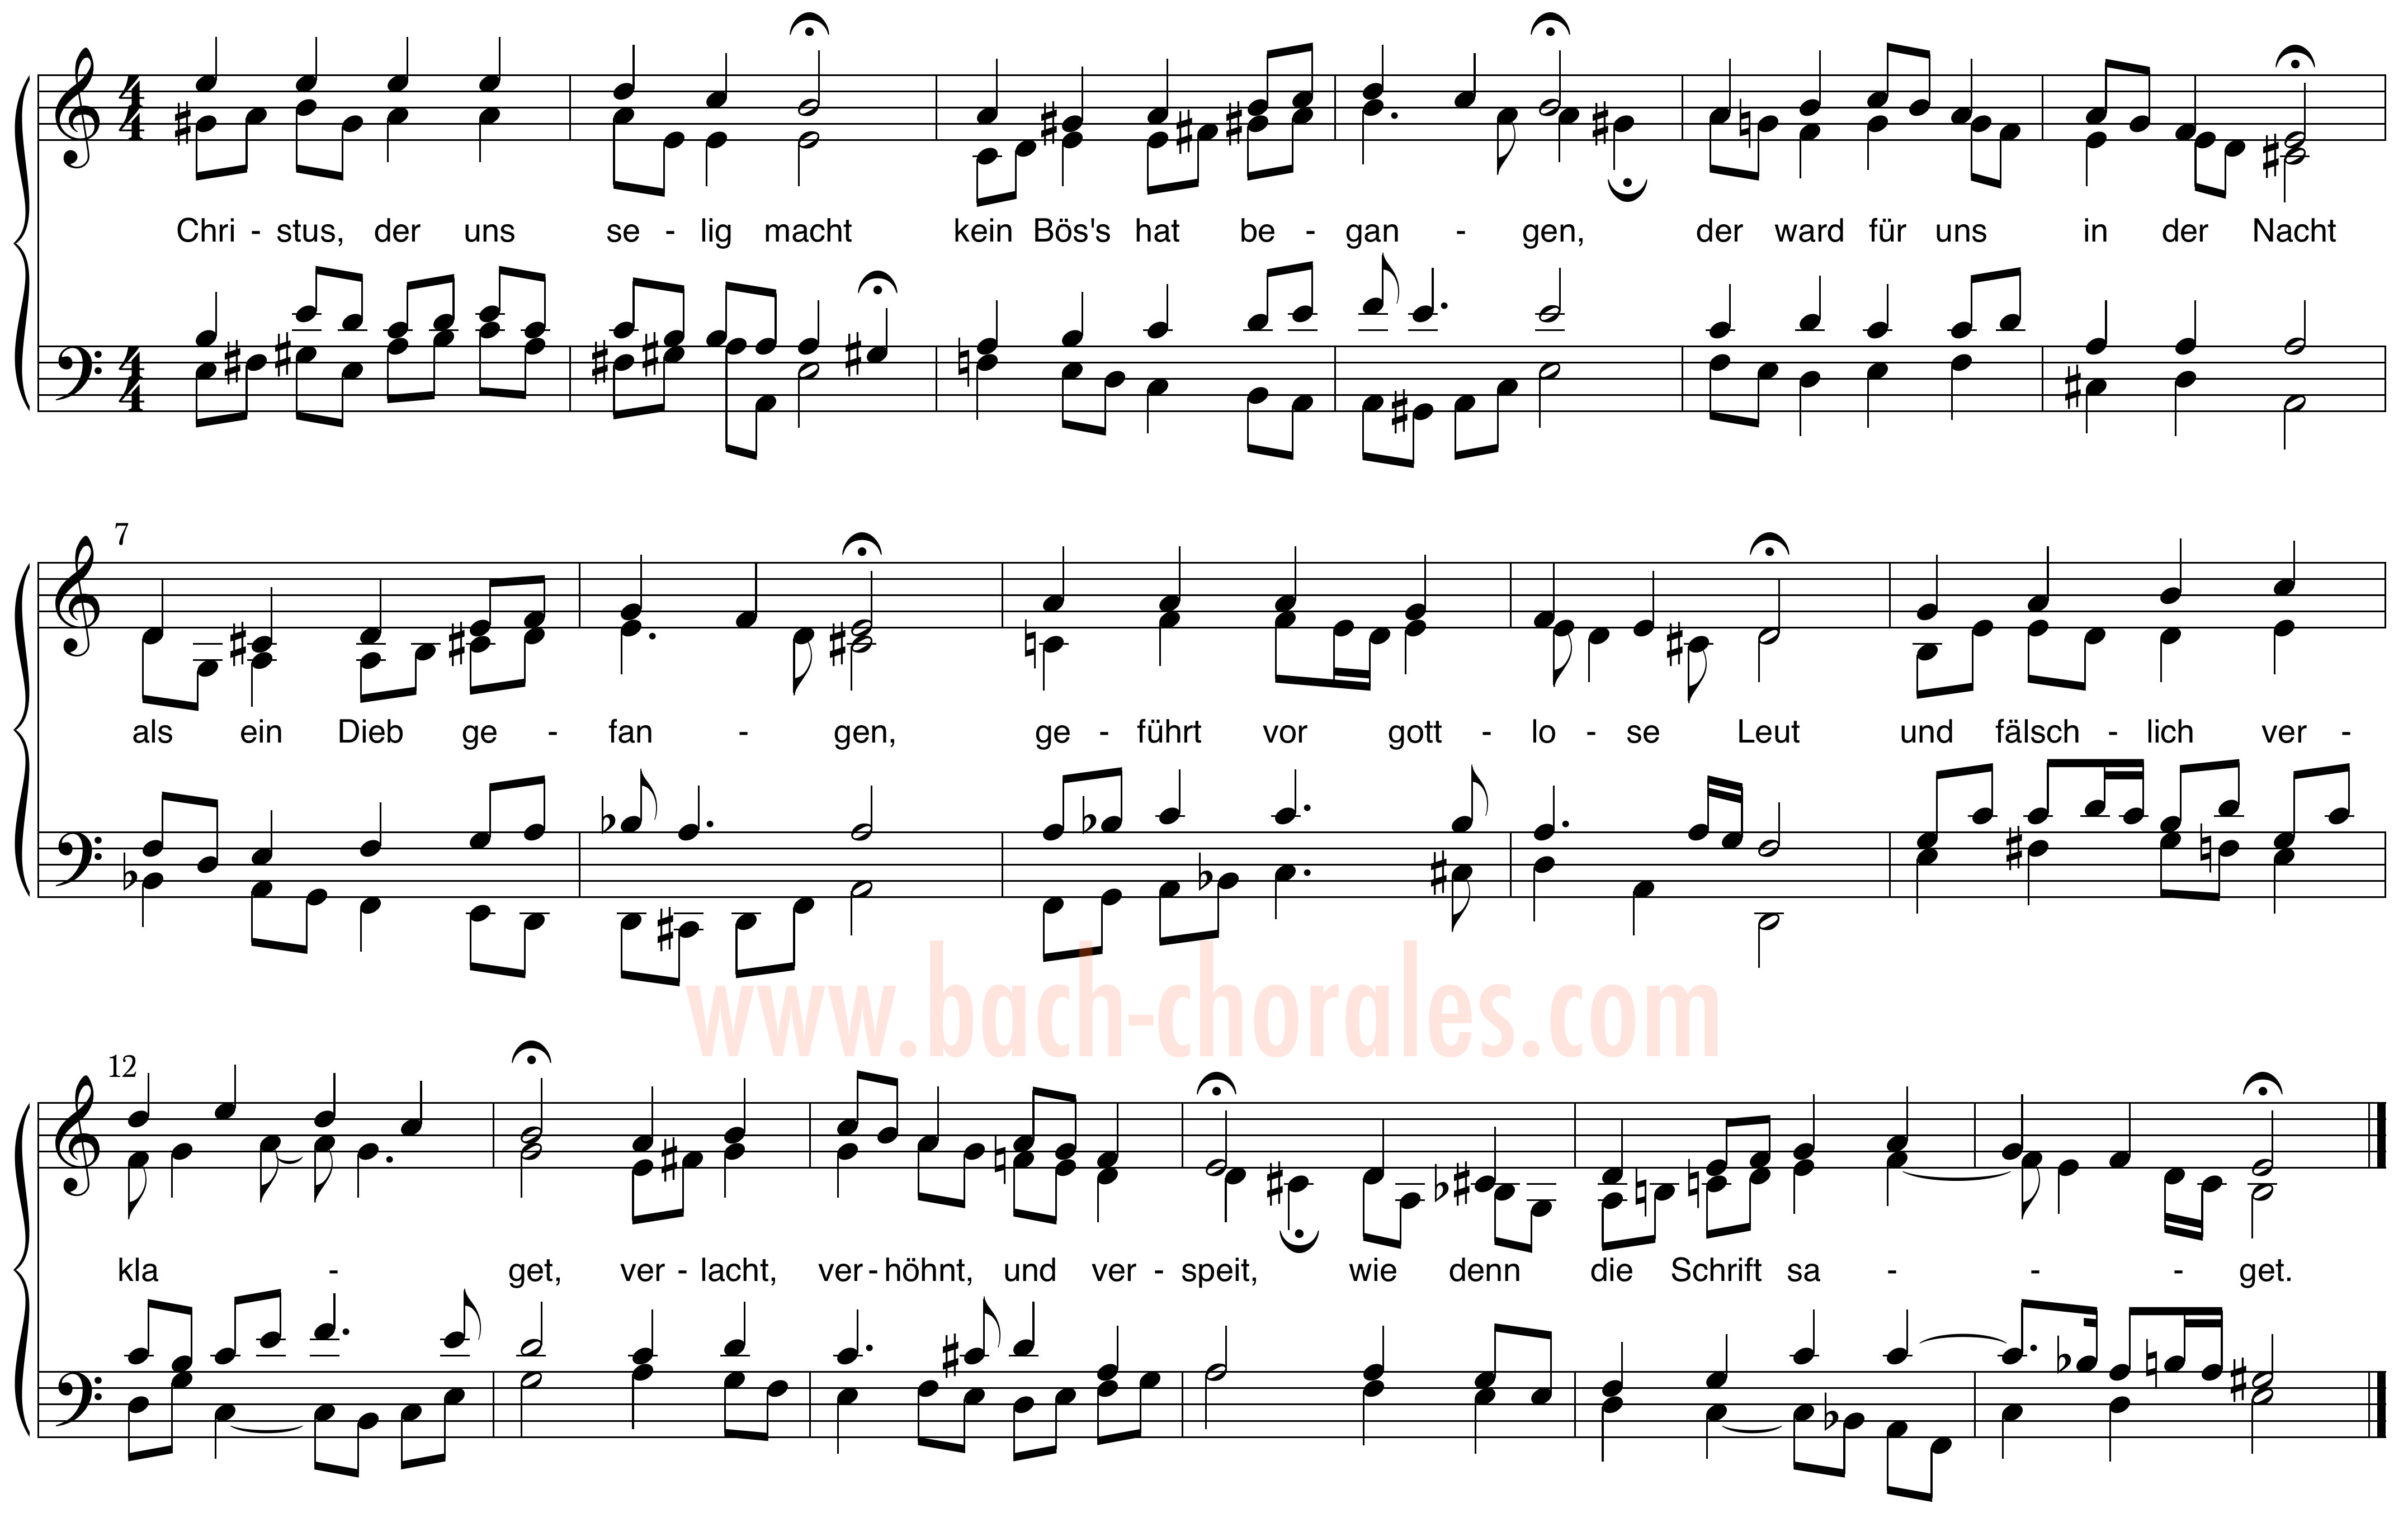 notenbeeld BWV 283 op https://www.bach-chorales.com/